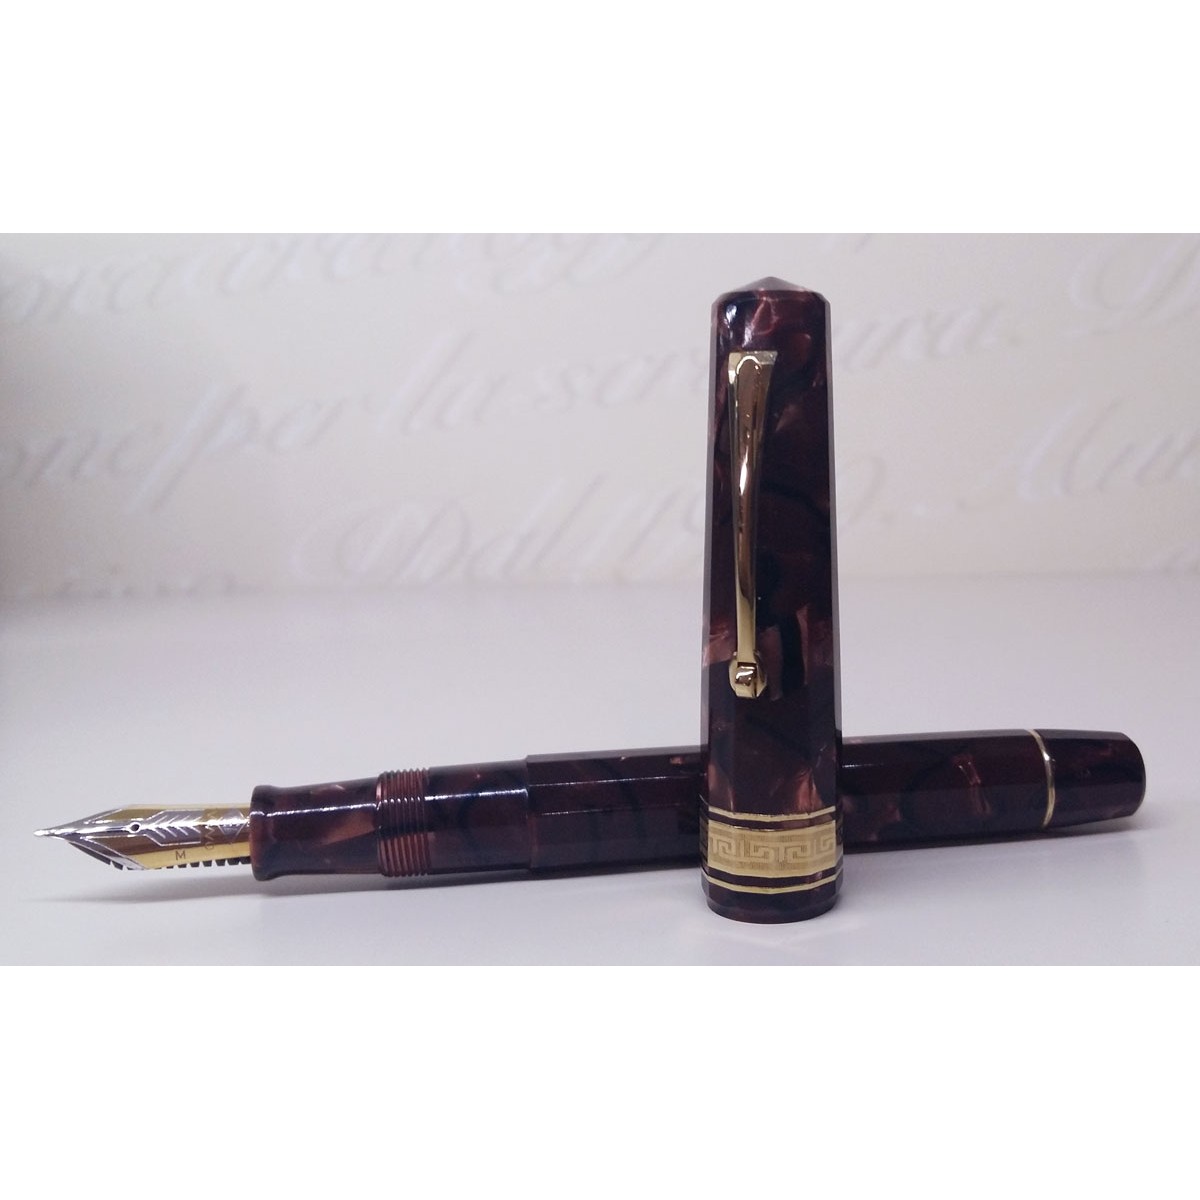 Omas - Extra - Bordeaux Celluloid - Original from 1992 - Fountain pen